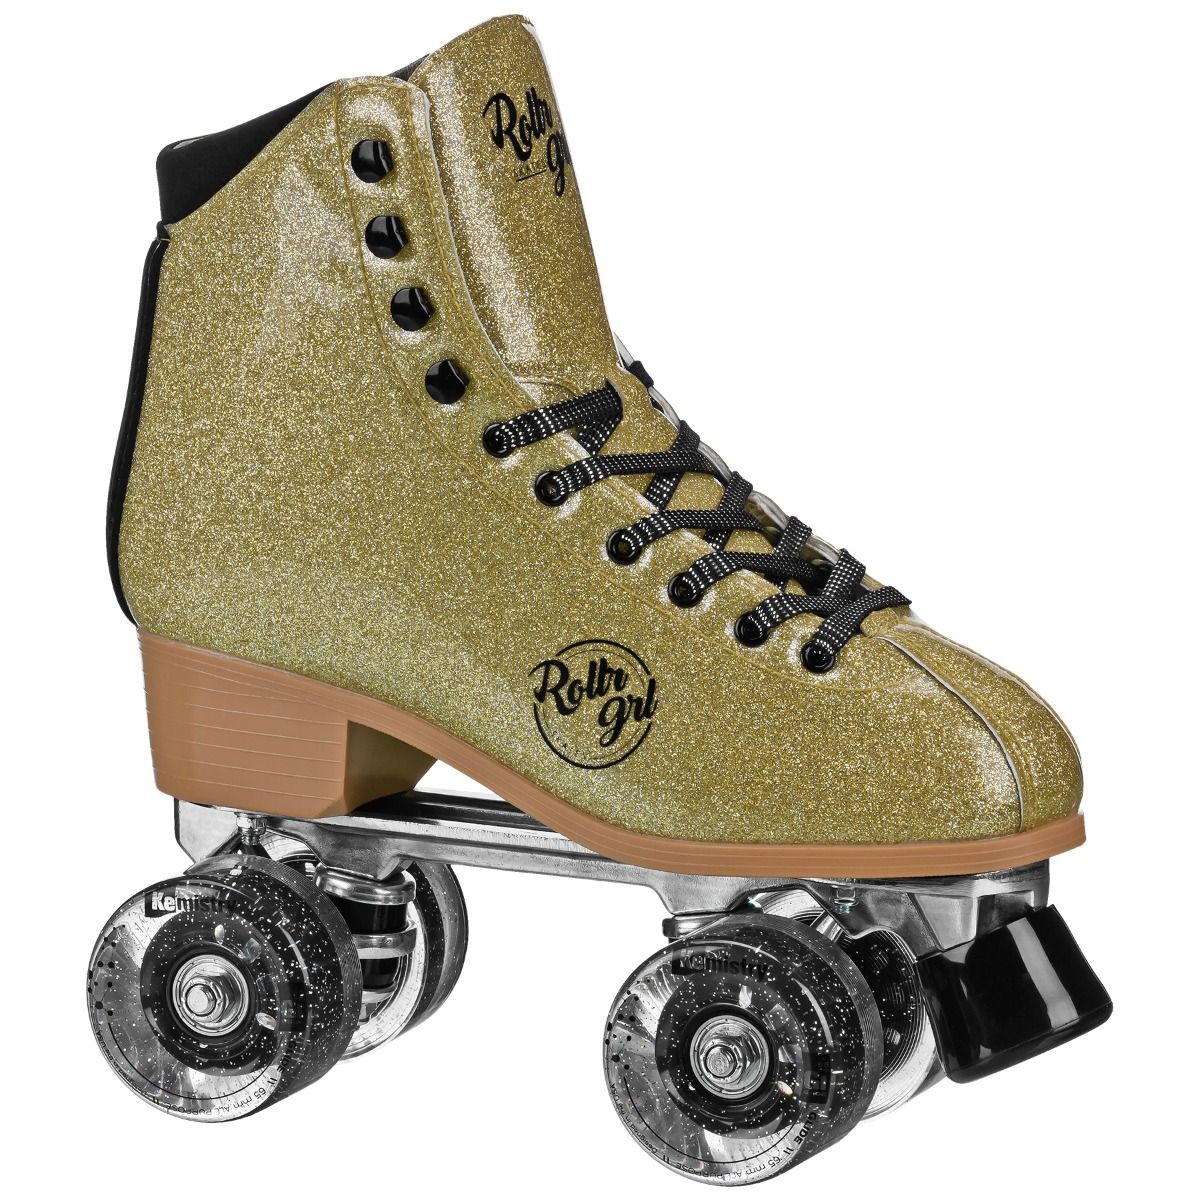 Rollr Grl Astra Outdoor Roller Skates!